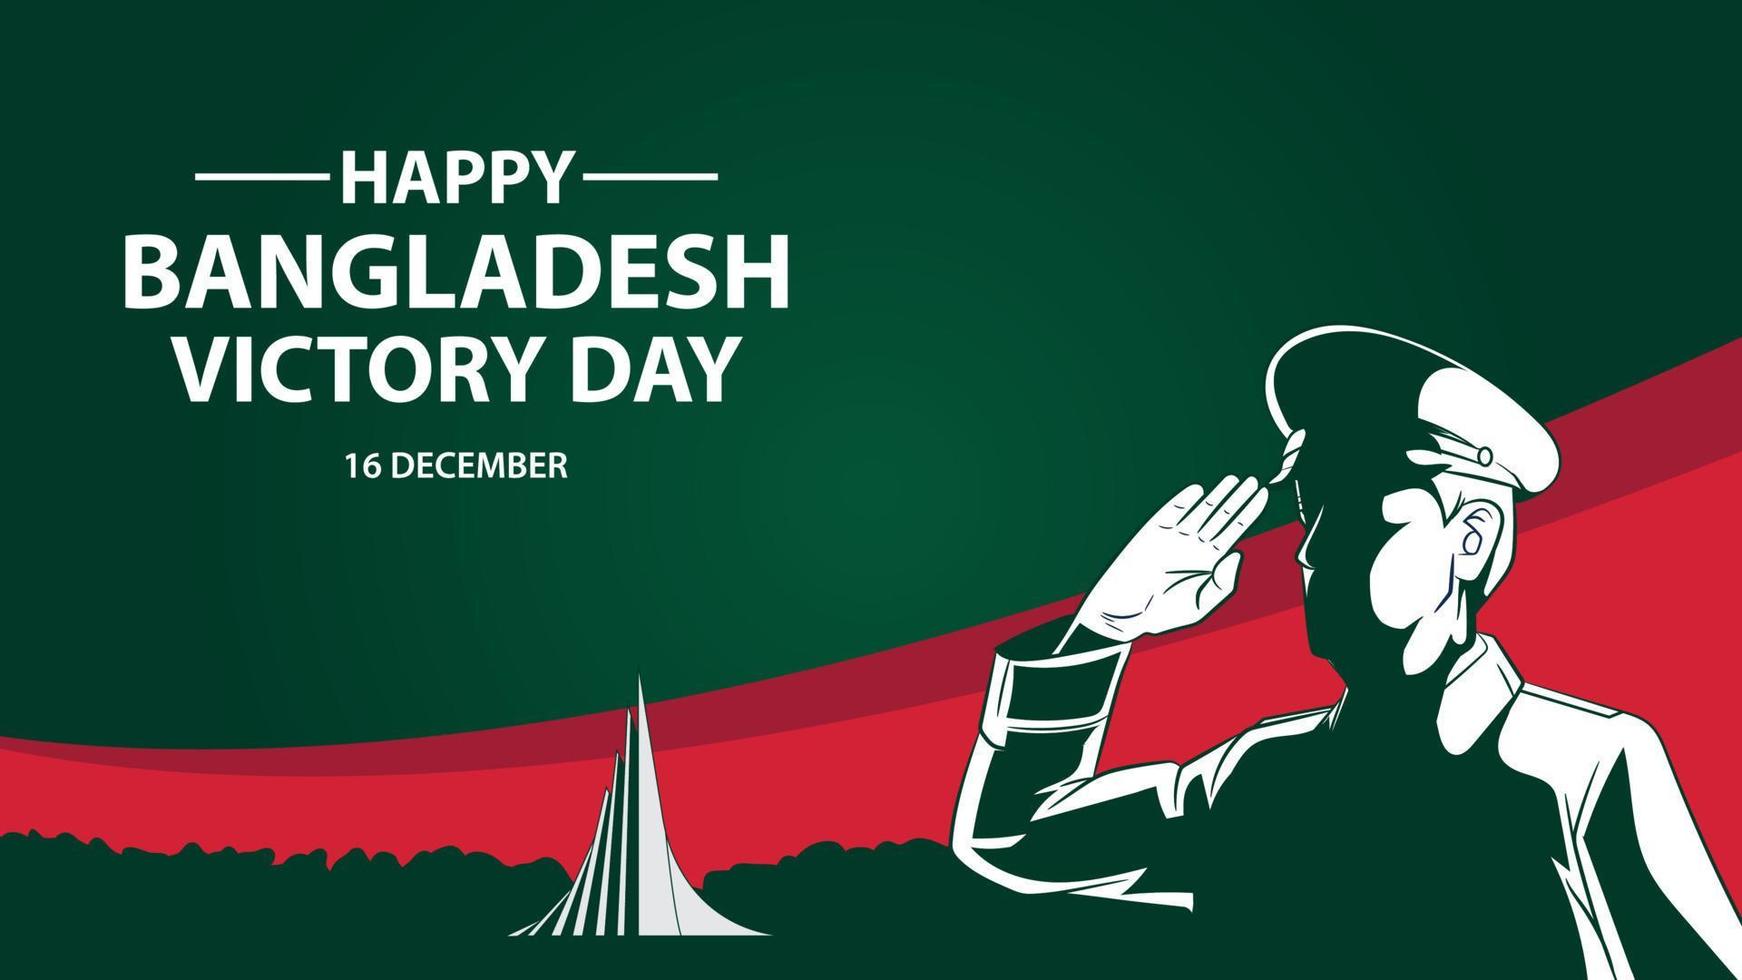 dia da vitória de bangladesh, 16 de dezembro, memorial nacional dos mártires vetor